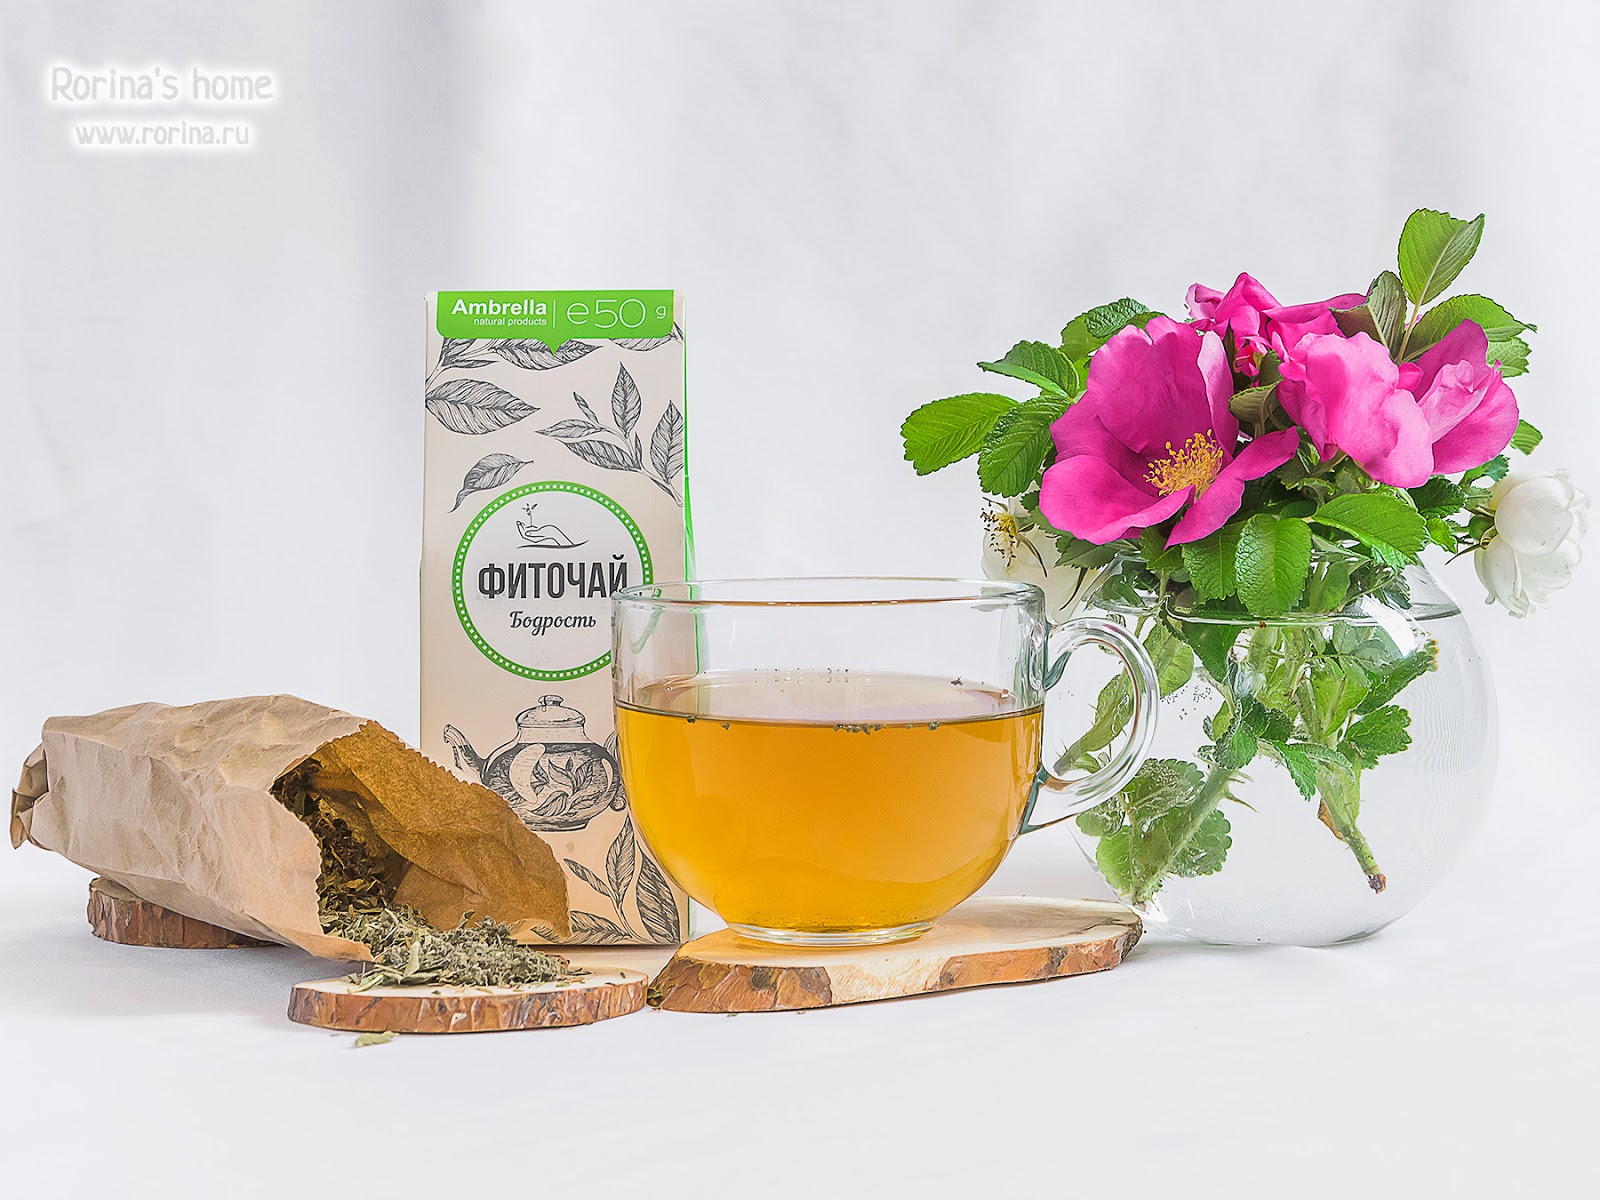 Вчерашний чай можно пить. "Чай травяной" "бадан толстолистный". Травяной чай бодрость. Чай на травах. Чайные травы для бодрости.